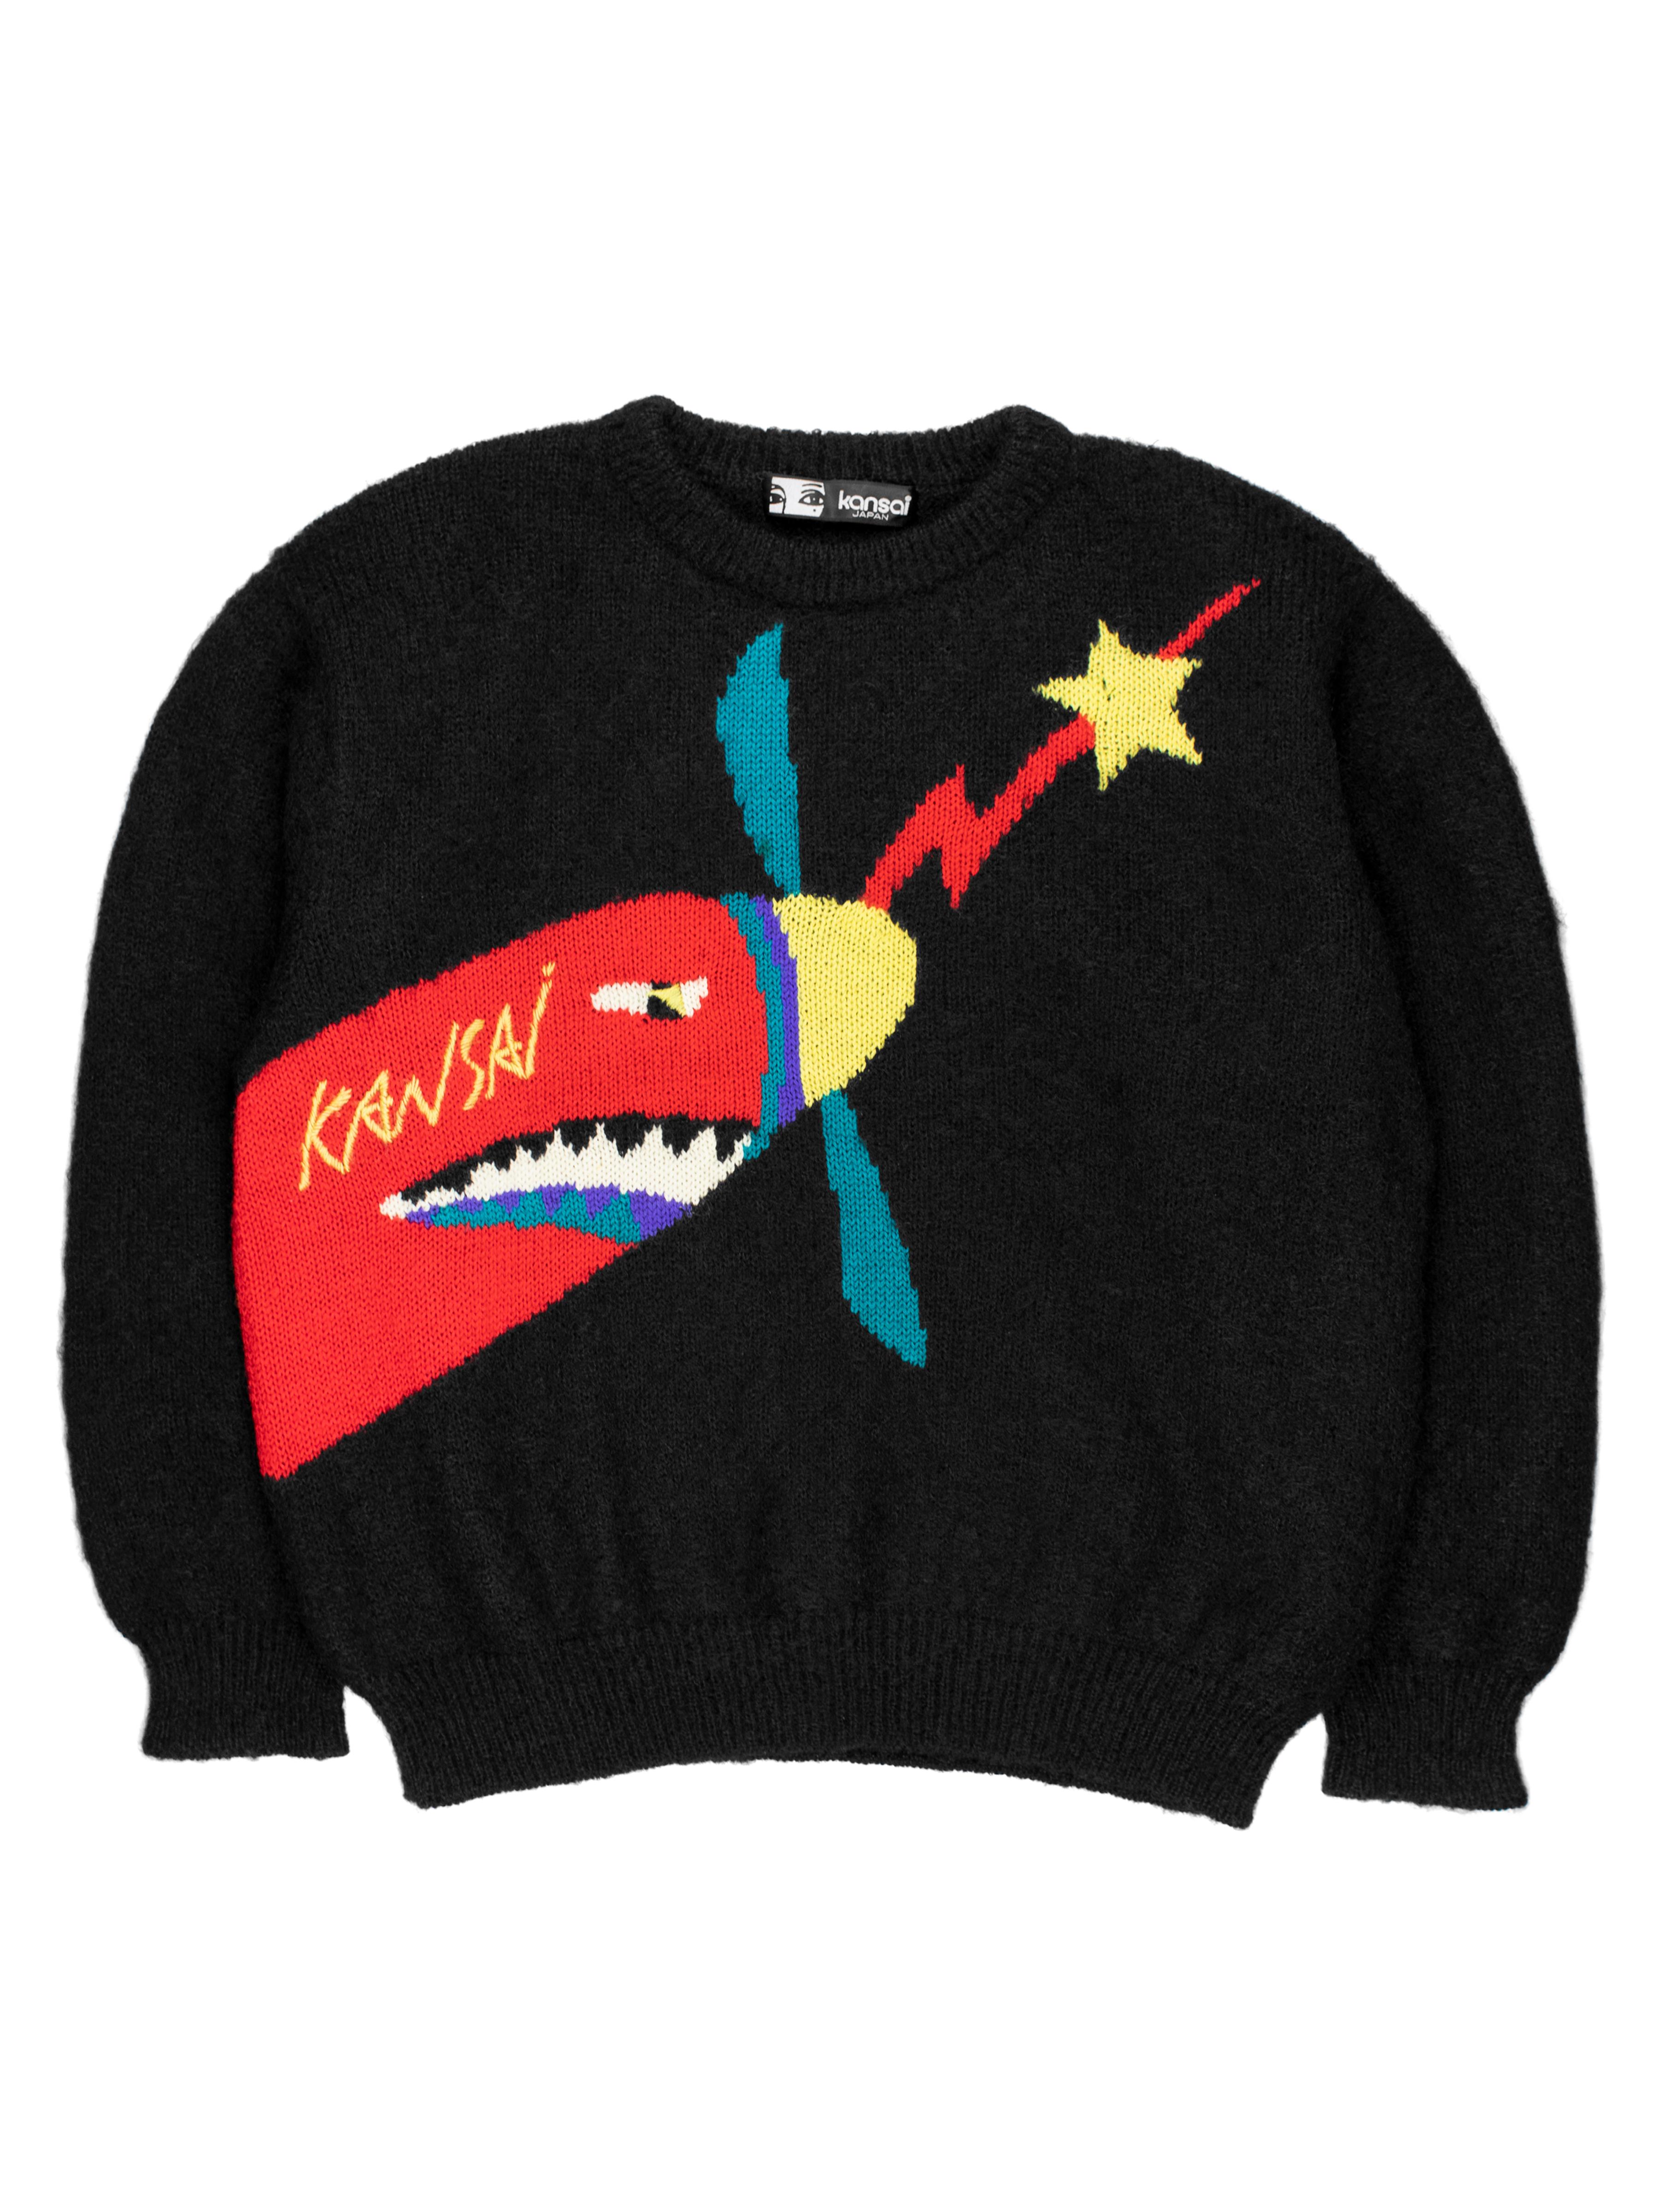 kansai yamamoto sweater